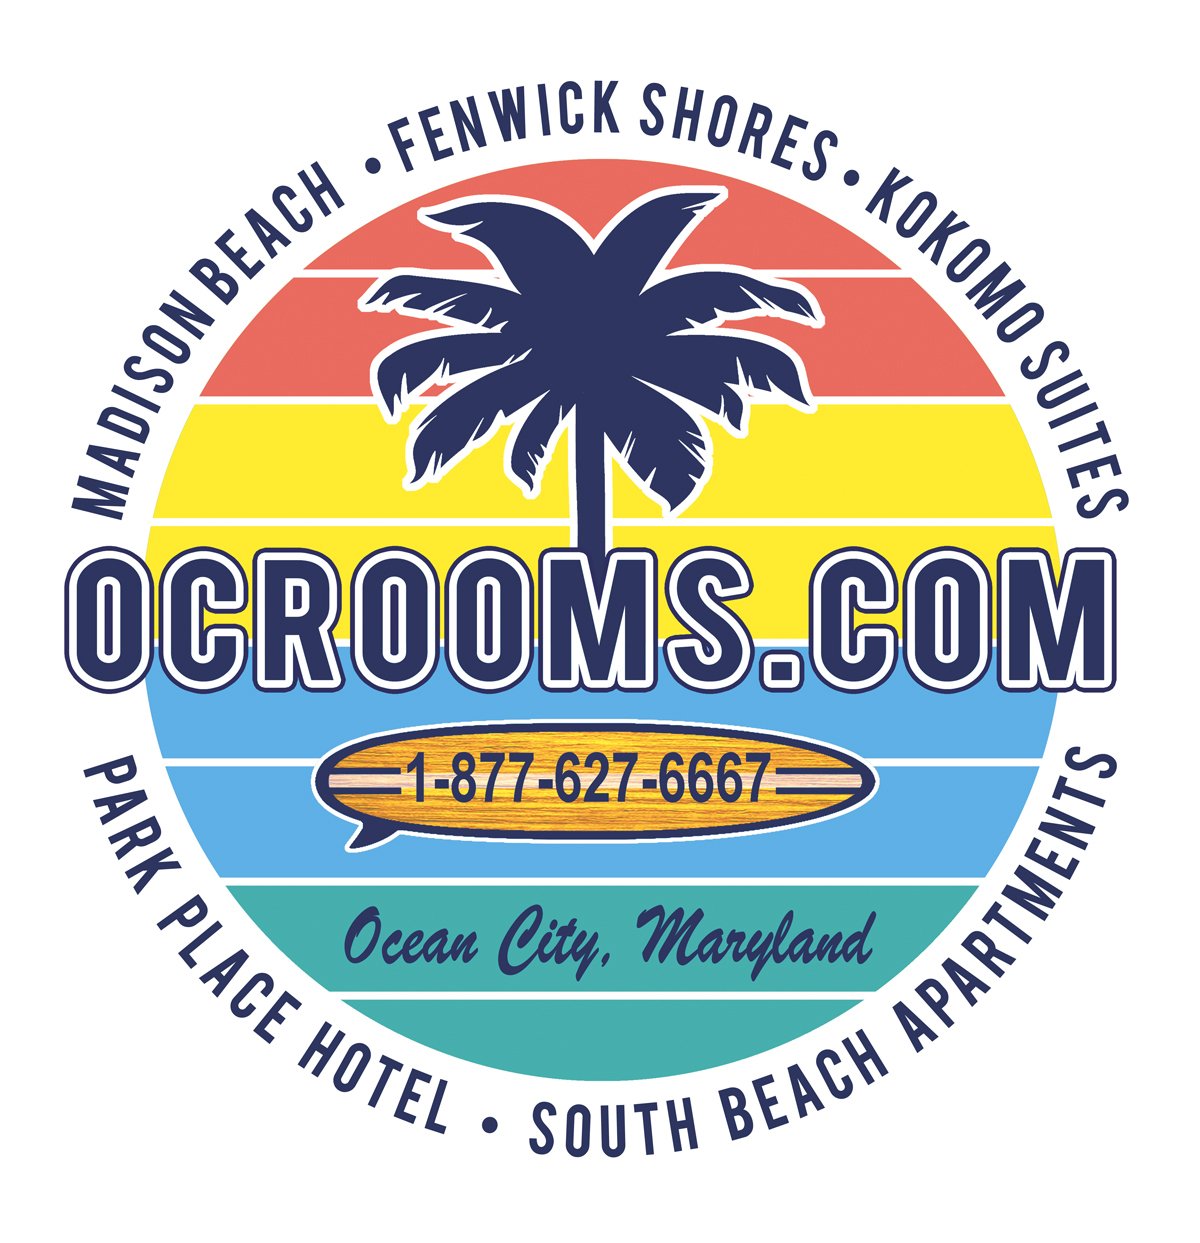 OCRooms.com